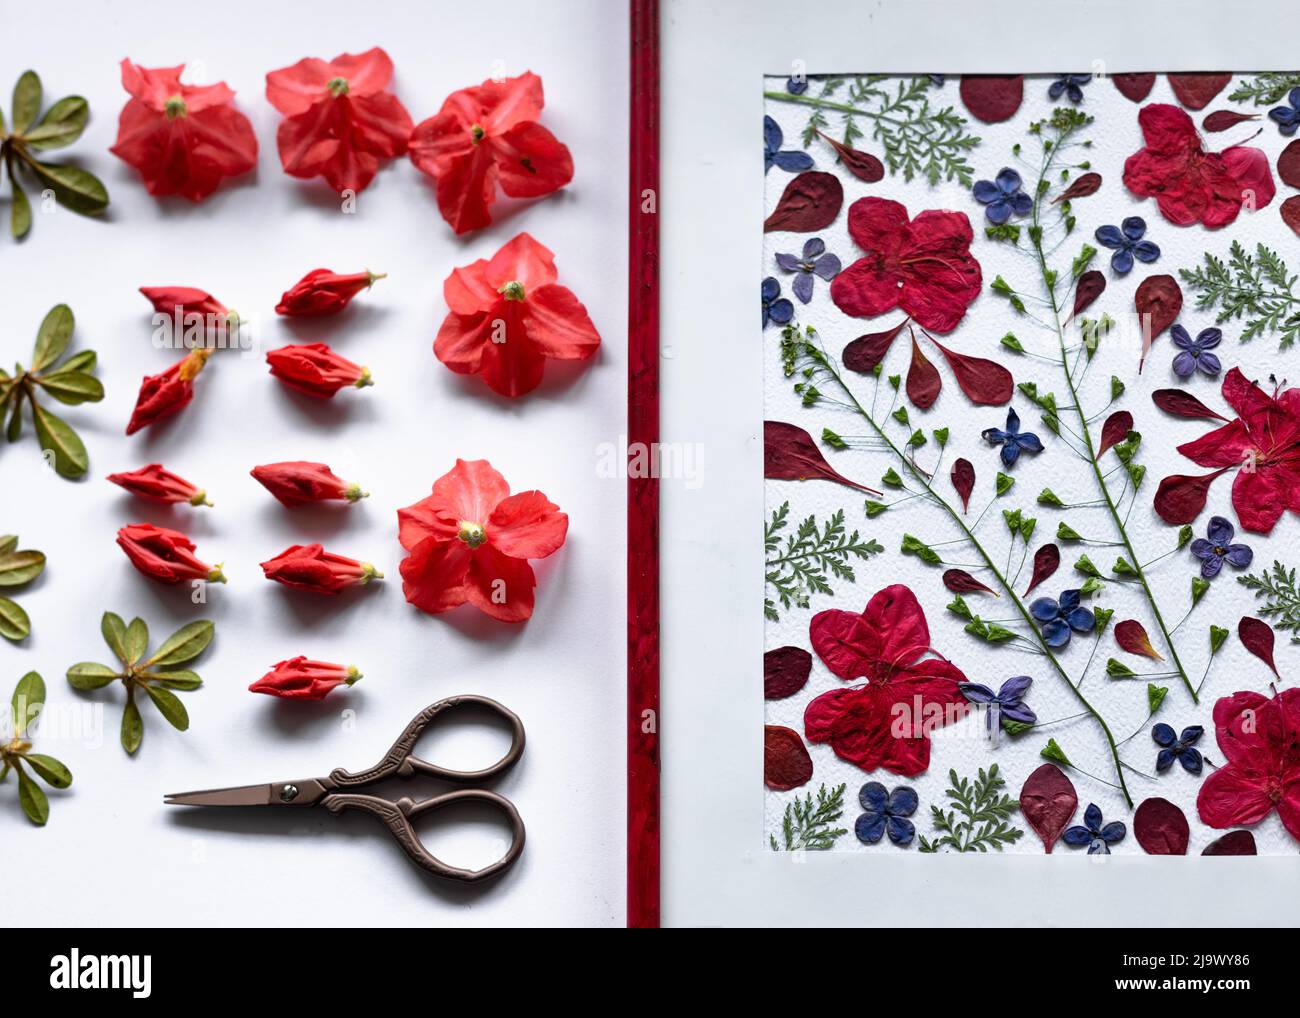 Fiori e germogli azalea preparati per la stampa sullo sfondo di un quadro botanico, un erbario di fiori azalea secchi. Monocromatico Foto Stock